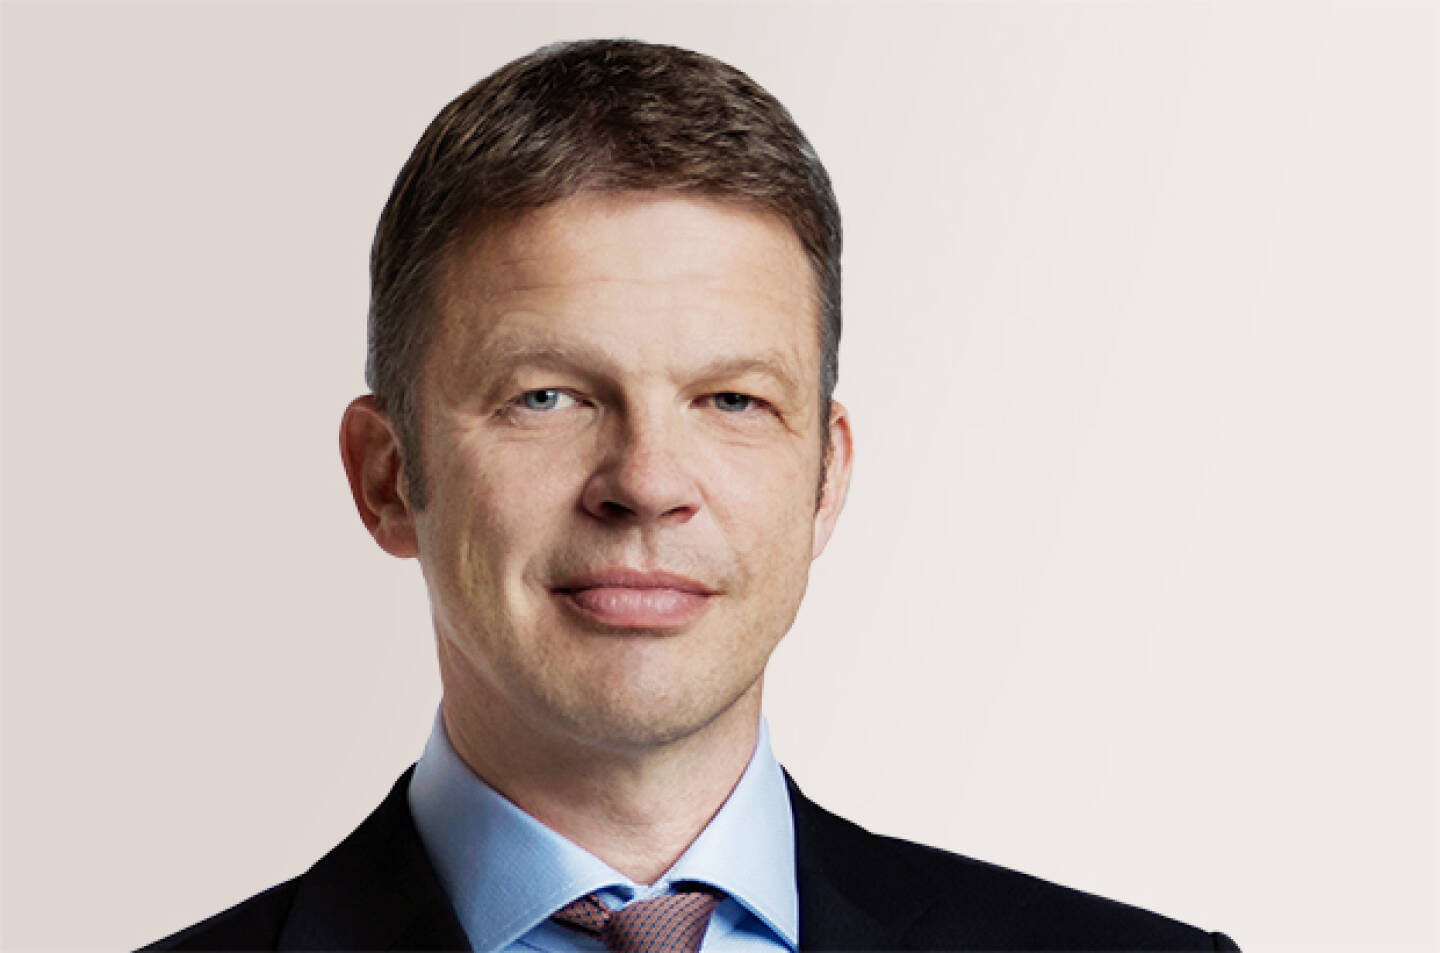 Christian Sewing, seit April 2018 ist er Vorstandsvorsitzender der Deutschen Bank; Bildquelle: Deutsche Bank-Homepage